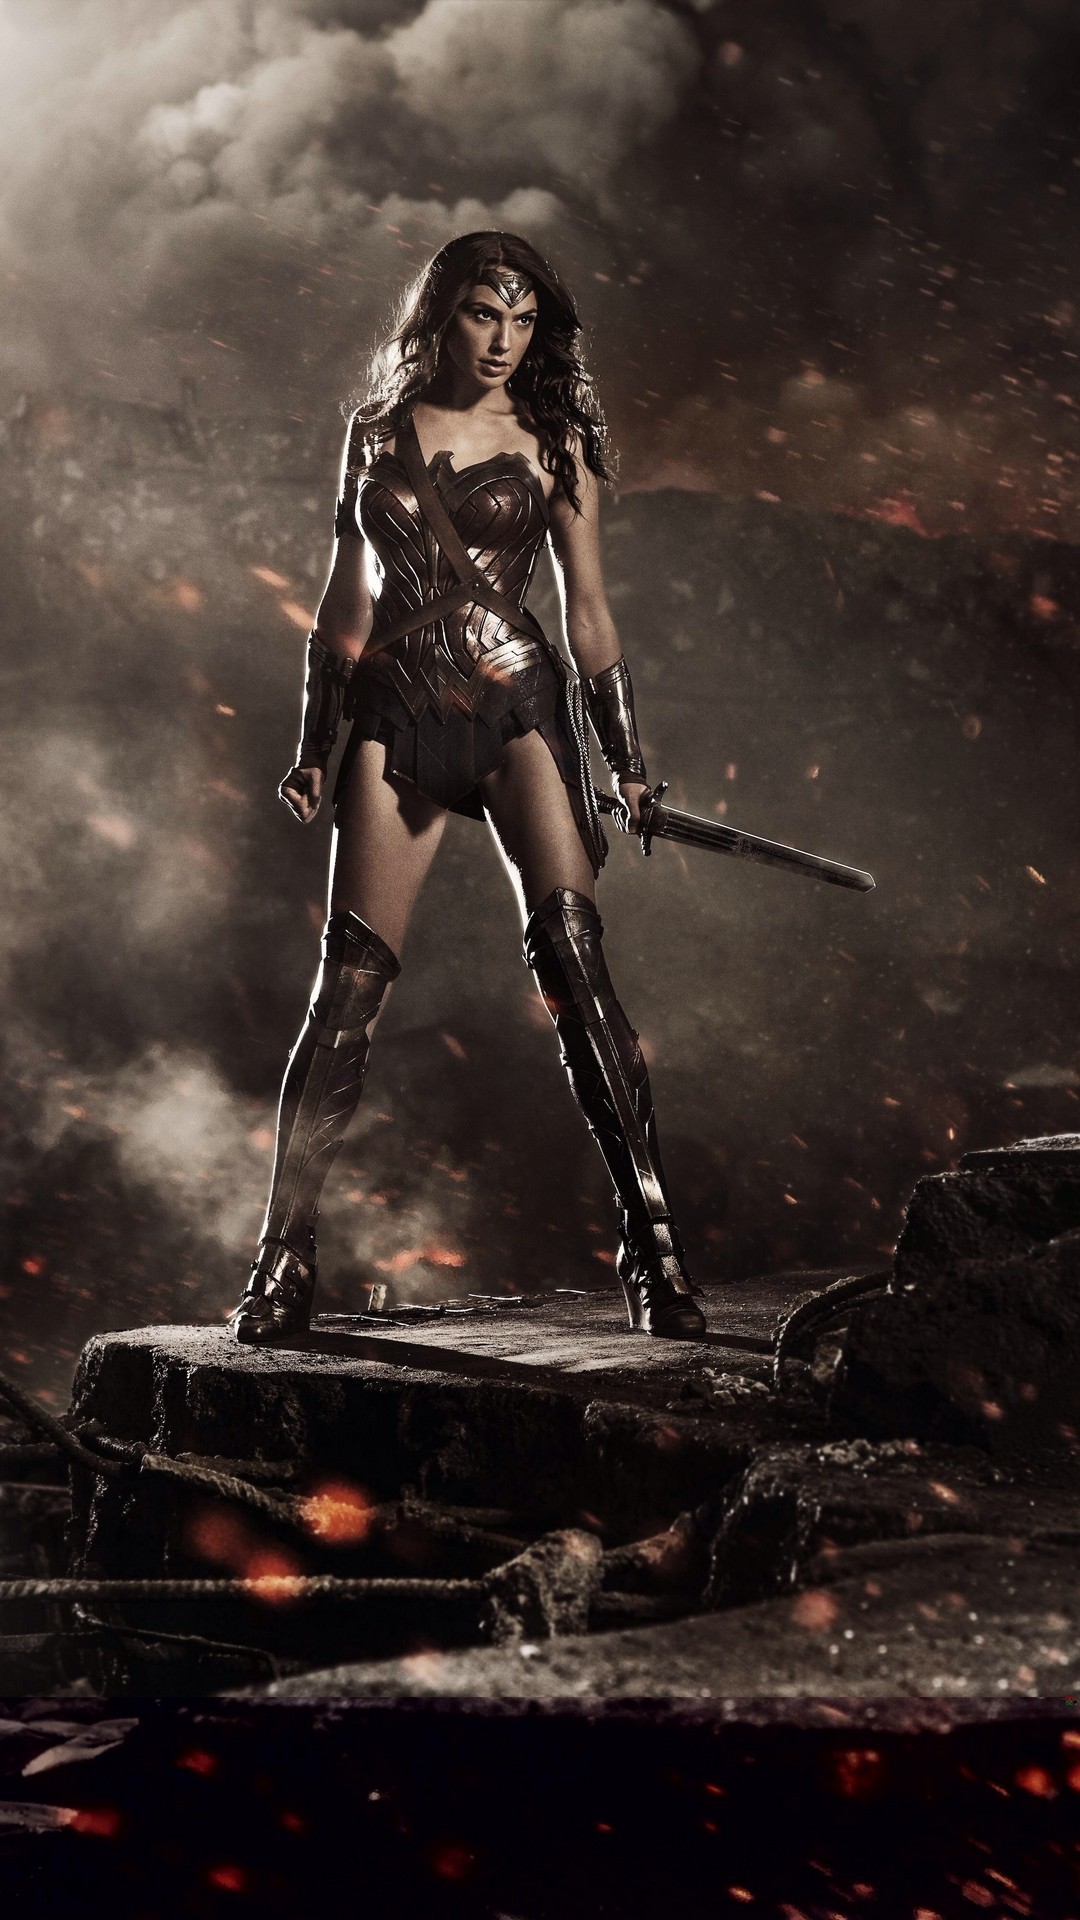 1080x1920 Gal Gadot Wonder Woman iPhone Wallpaper resolution 